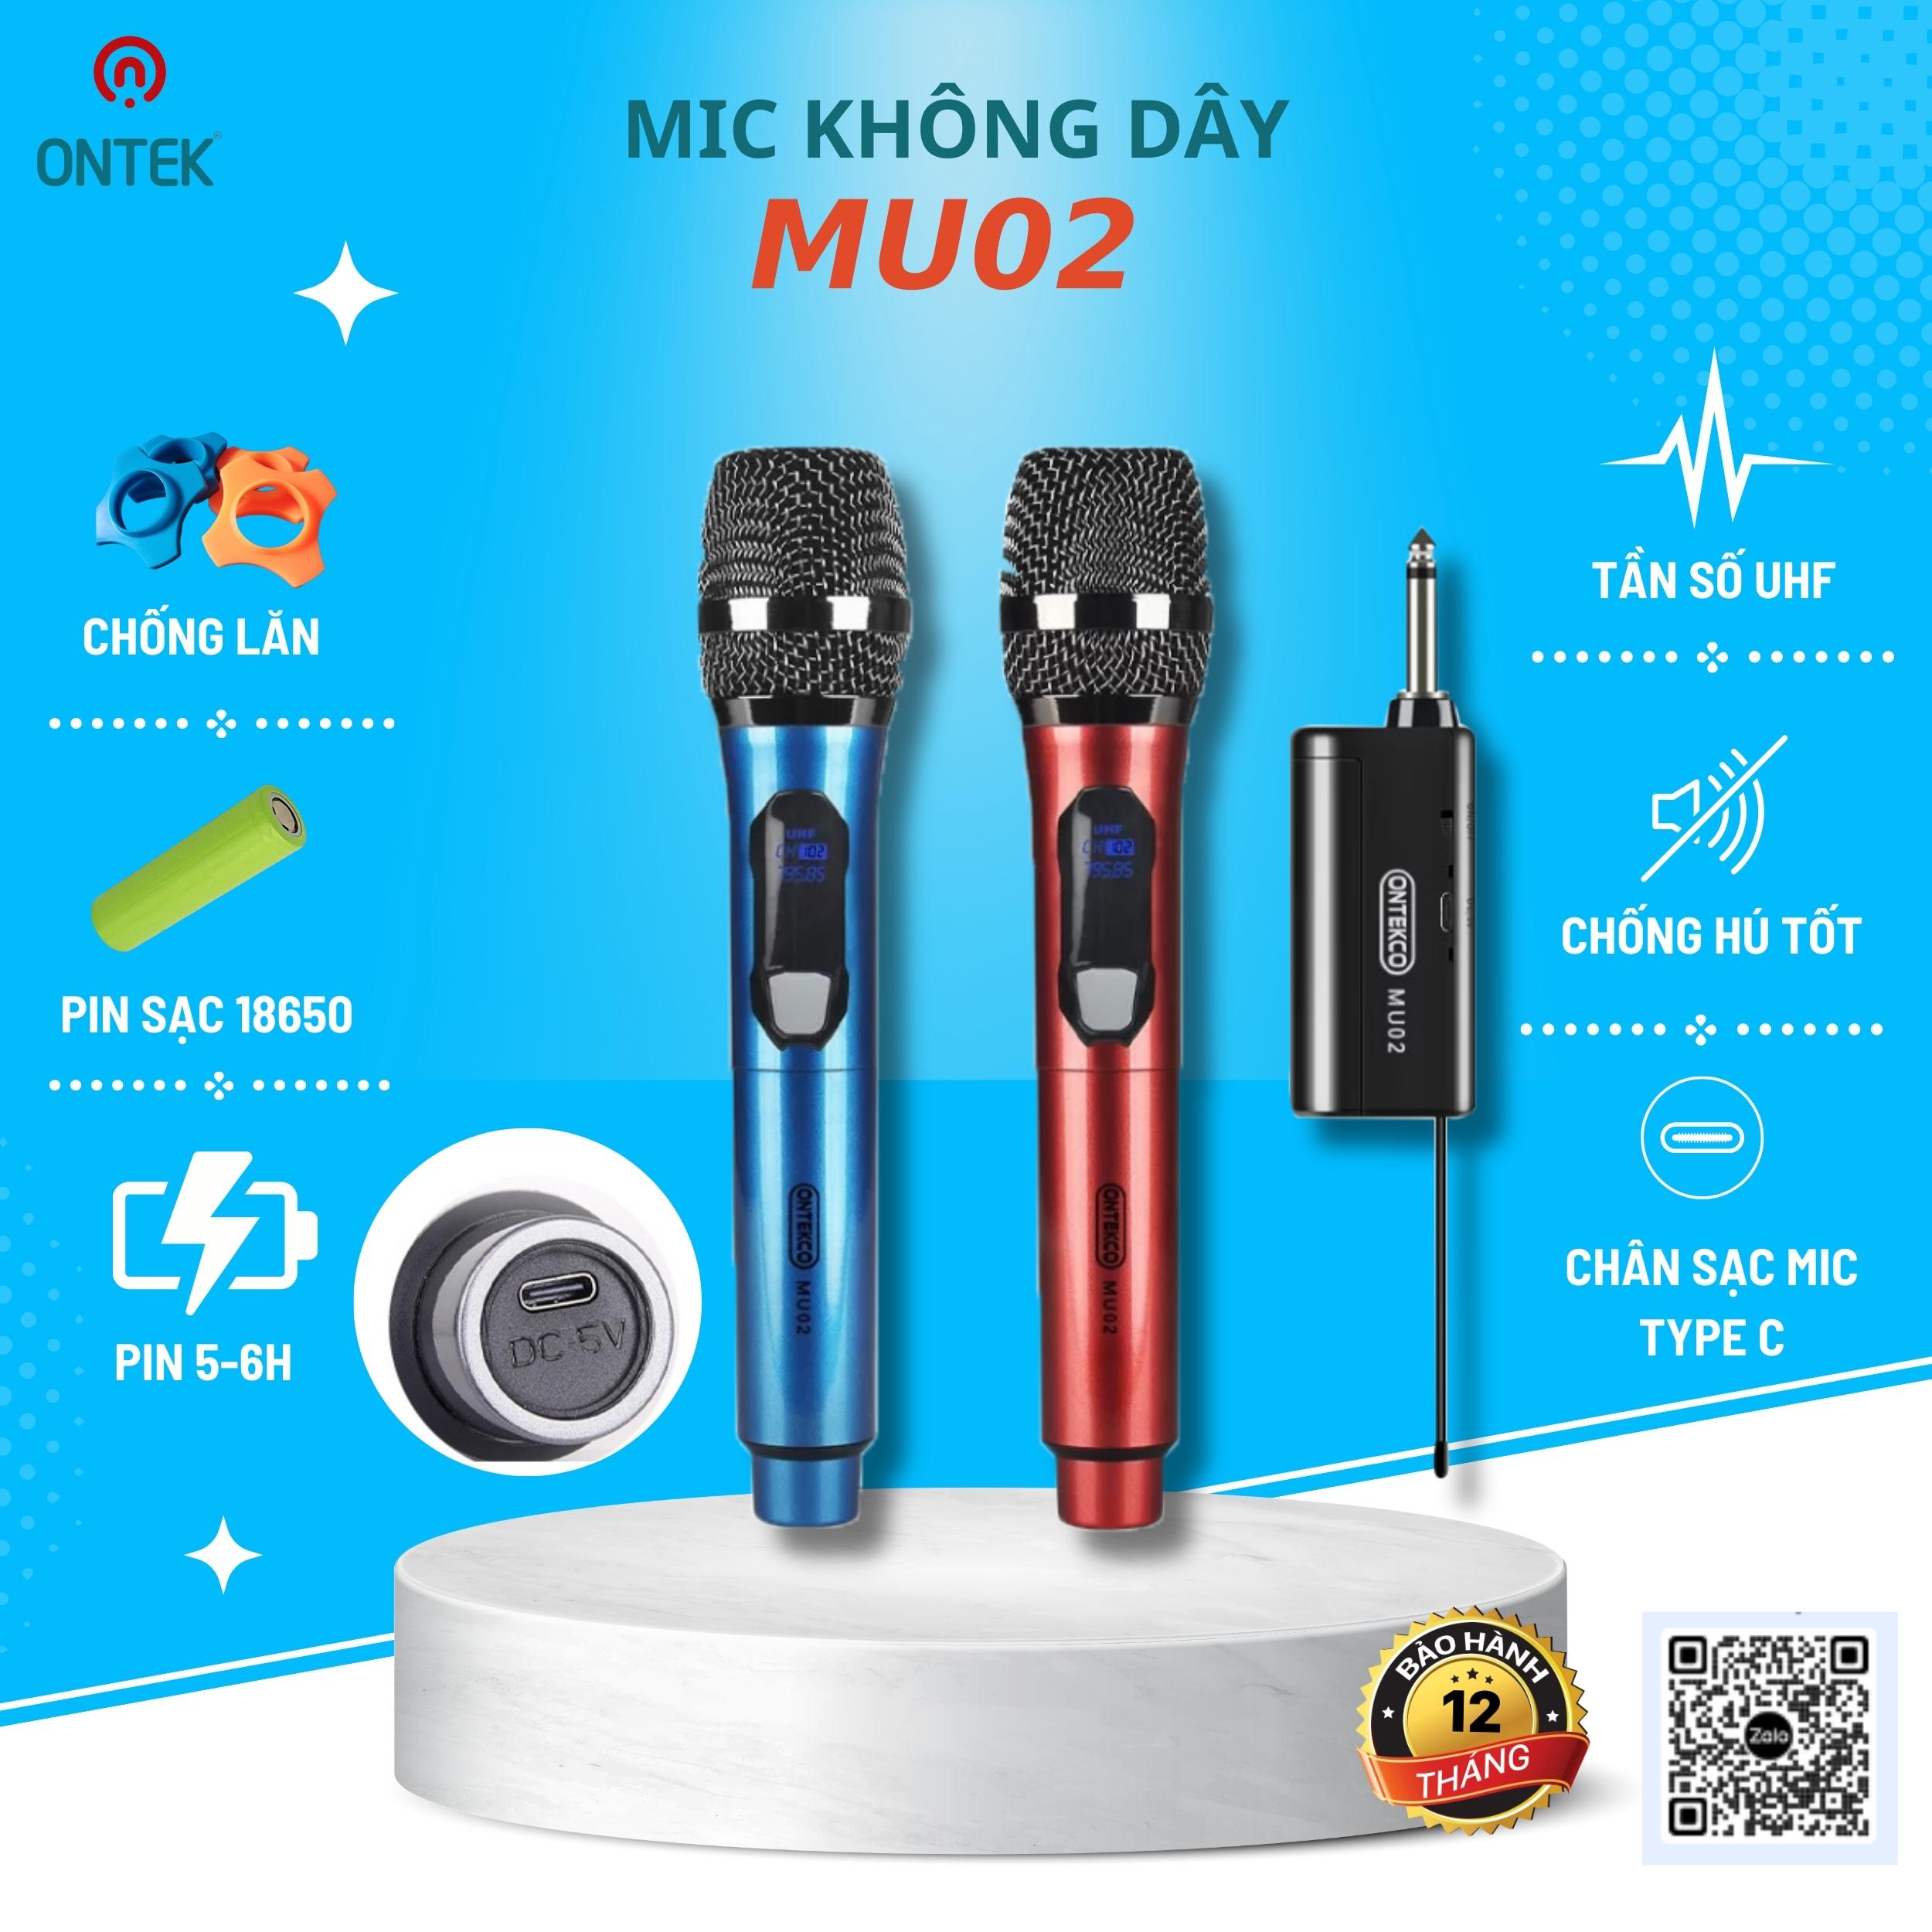 Bộ 2 Micro ONTEKCO MU02 Karaoke Không Dây Siêu Sang, Chuyên Dùng Cho Amply